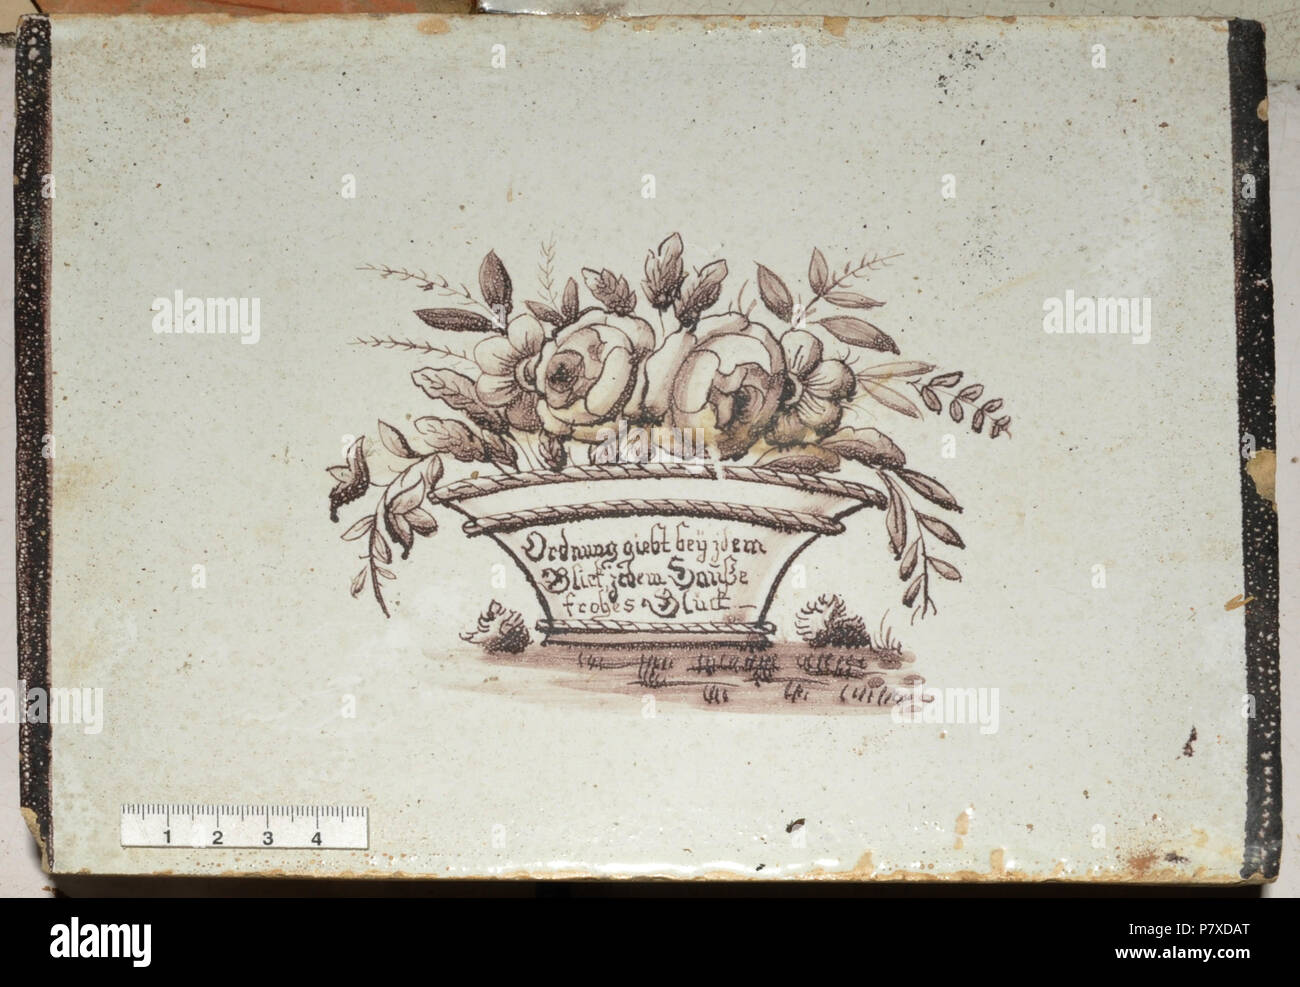 Deutsch: Ofenkachel, Fayenceglasur, manganviolette Malerei . 1825 14 Aeschlimann 08 Privatbesitz 1825 Foto Stock